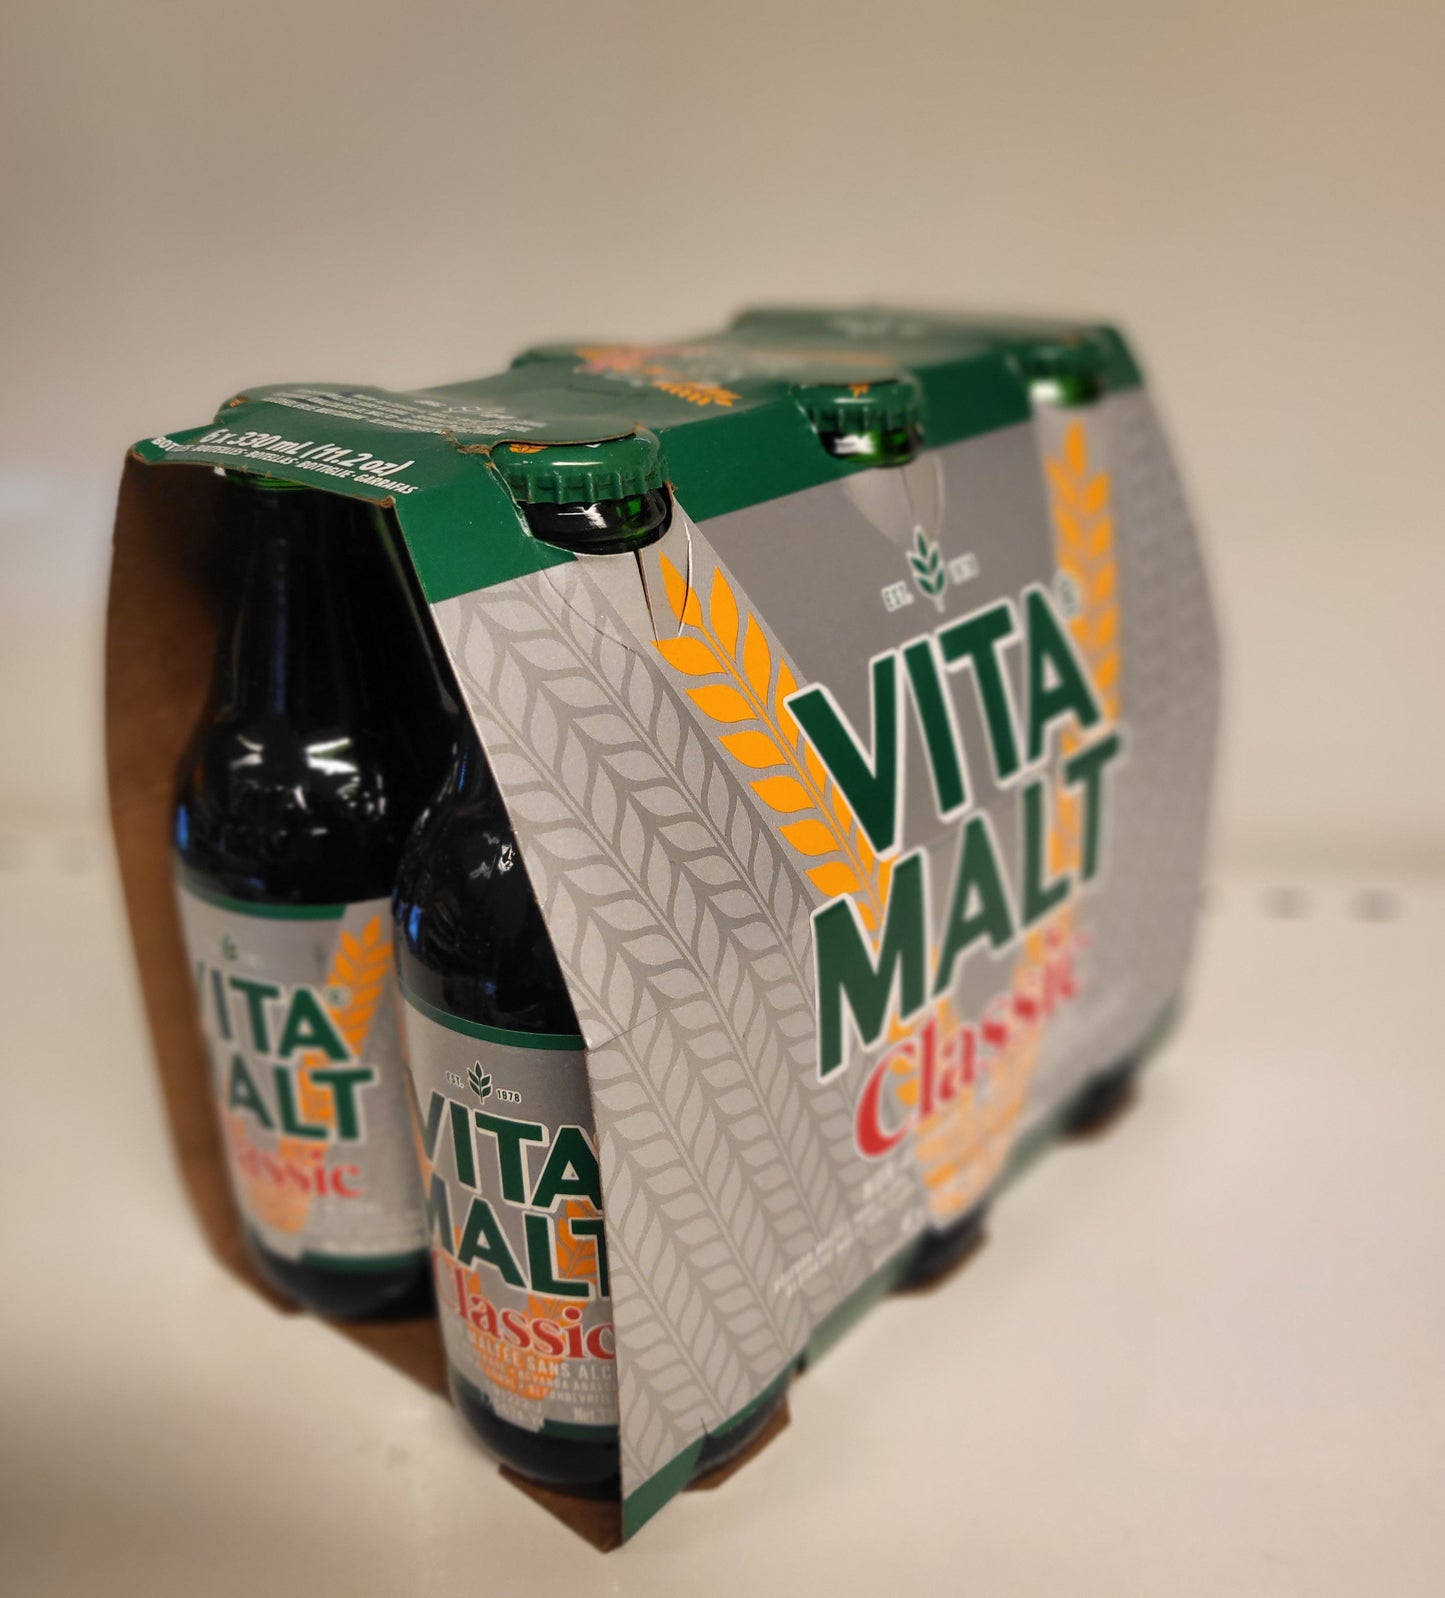 Vita Malt Classic 6 x 330ml